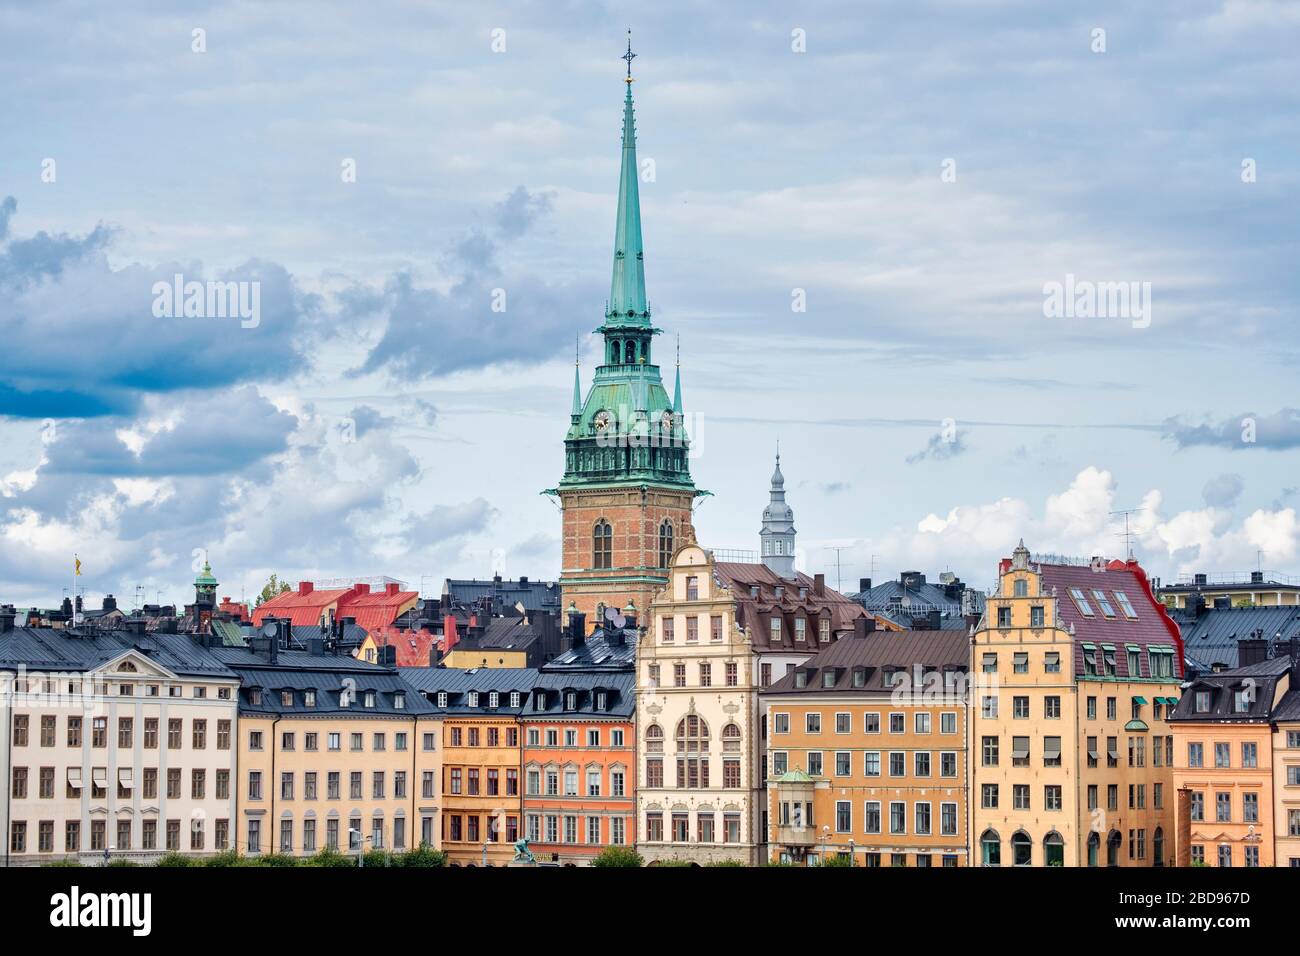 Les gratte-ciel de Stockholm sont le clocher de l'église allemande, Stockholm, Suède, Europe Banque D'Images